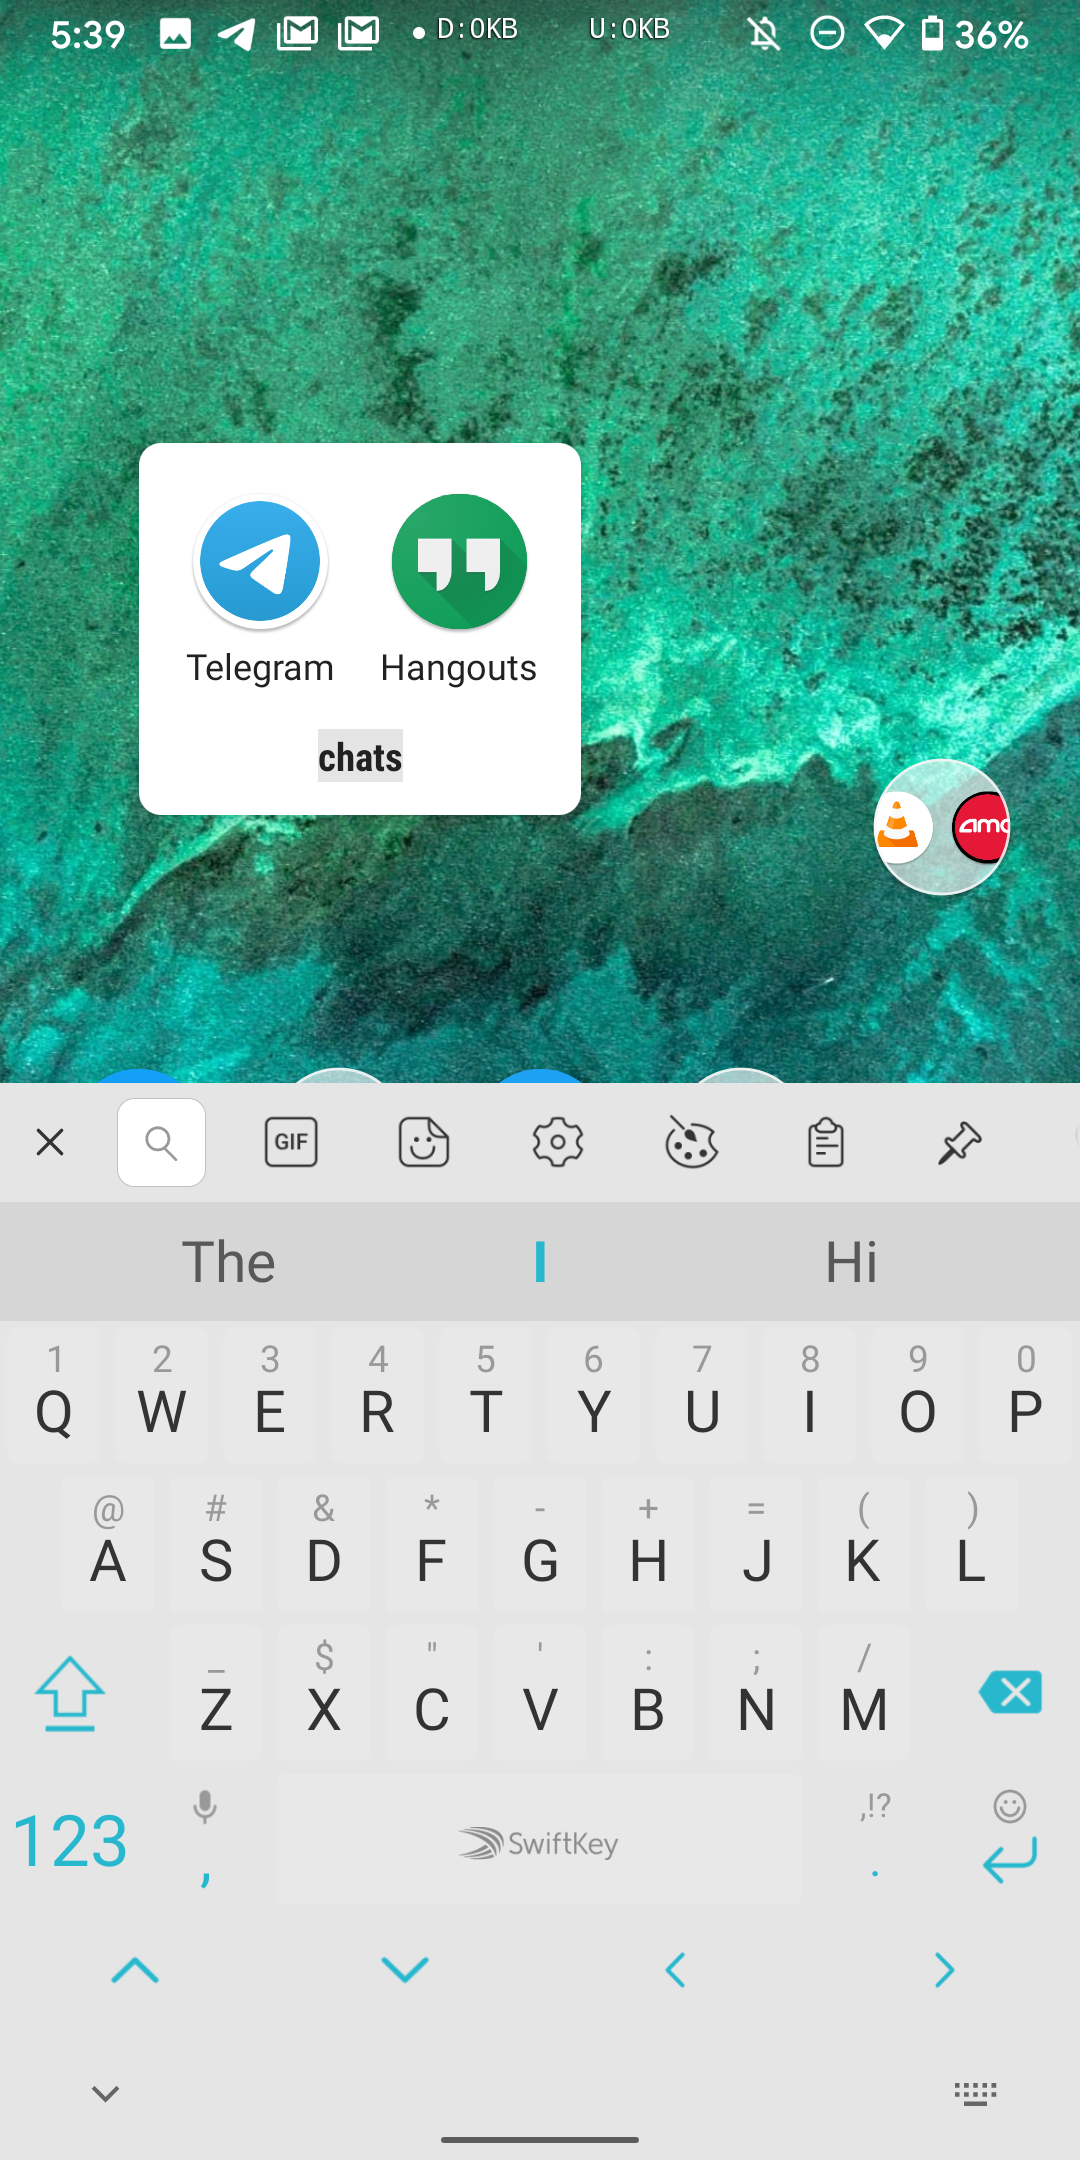 Sugestão de nome de pasta recomendando bate-papo para Telegram e Hangouts em uma pasta